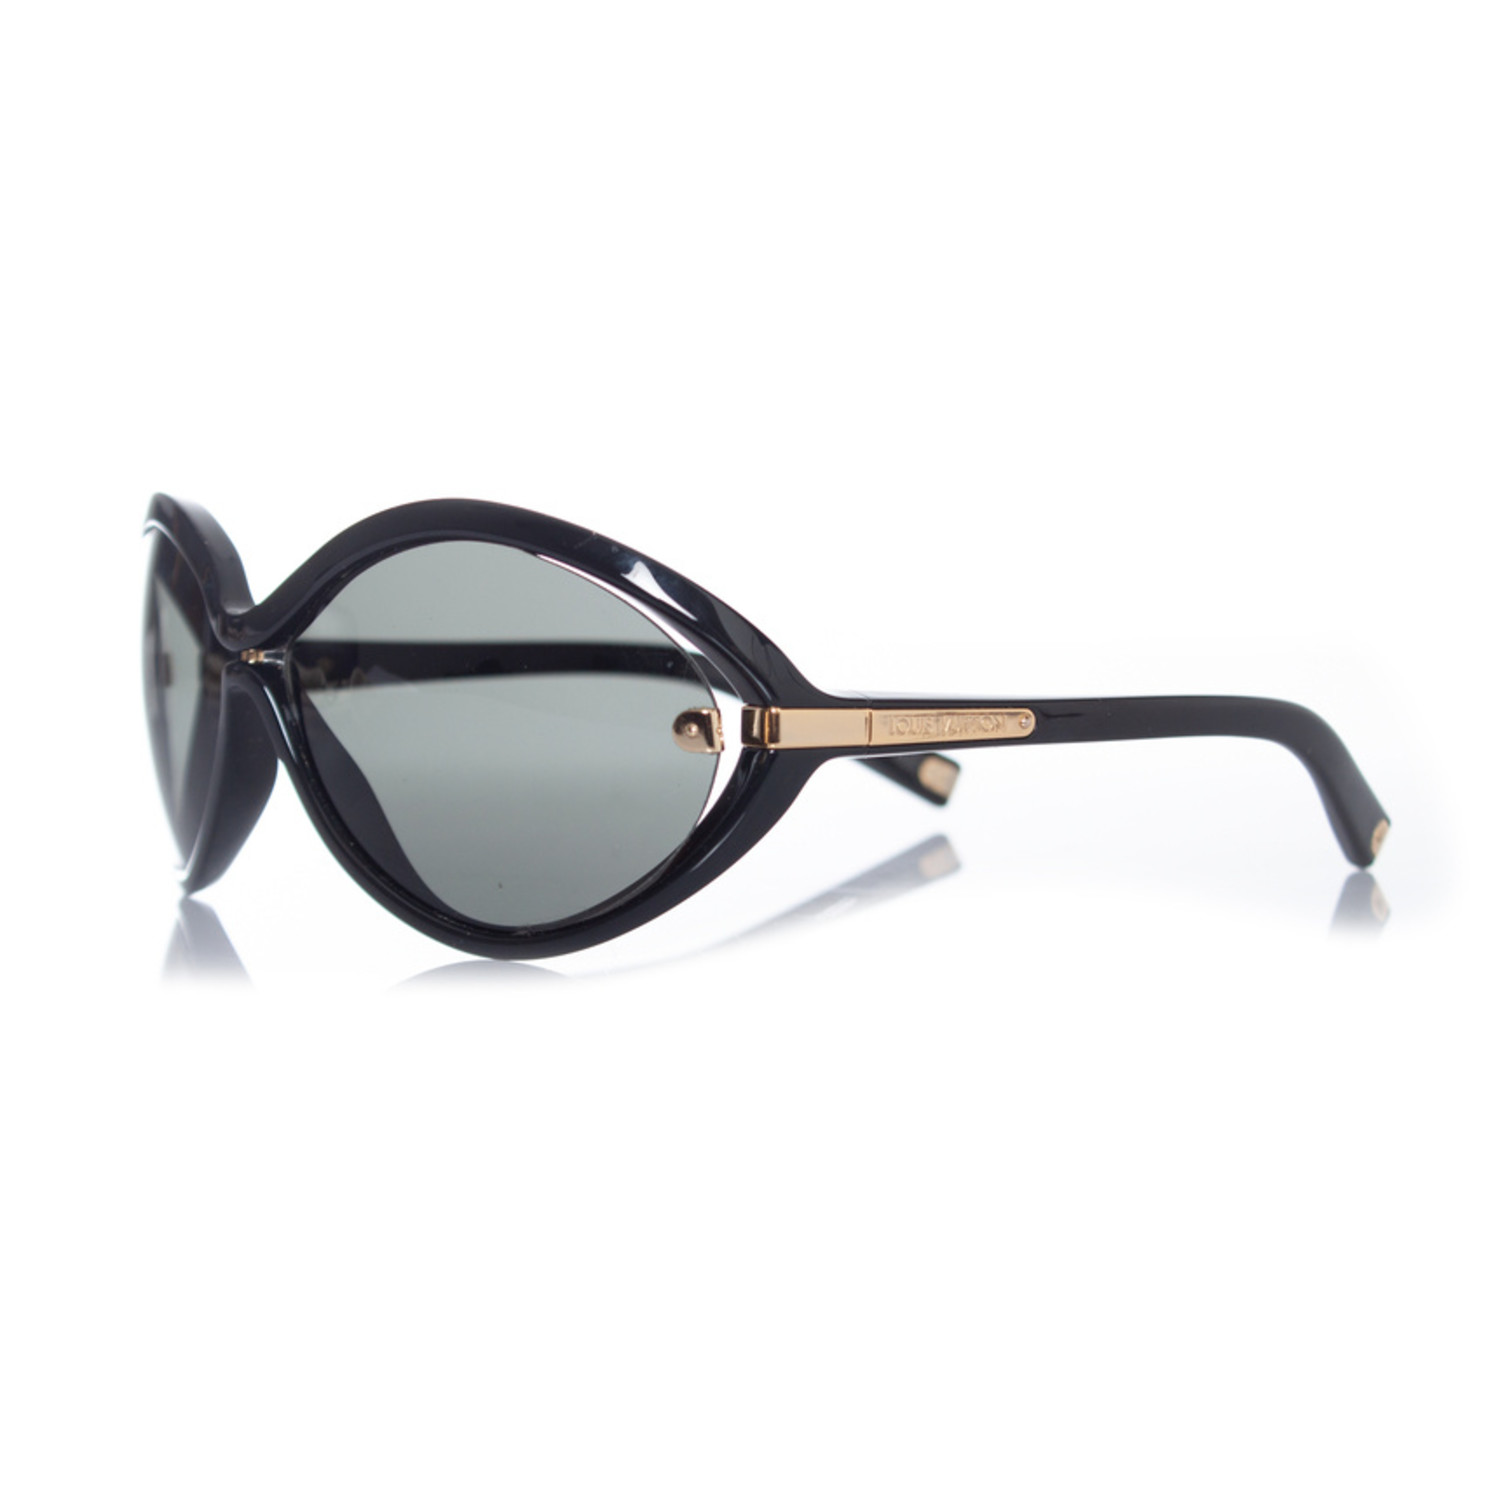 Black Original LV sunglasses